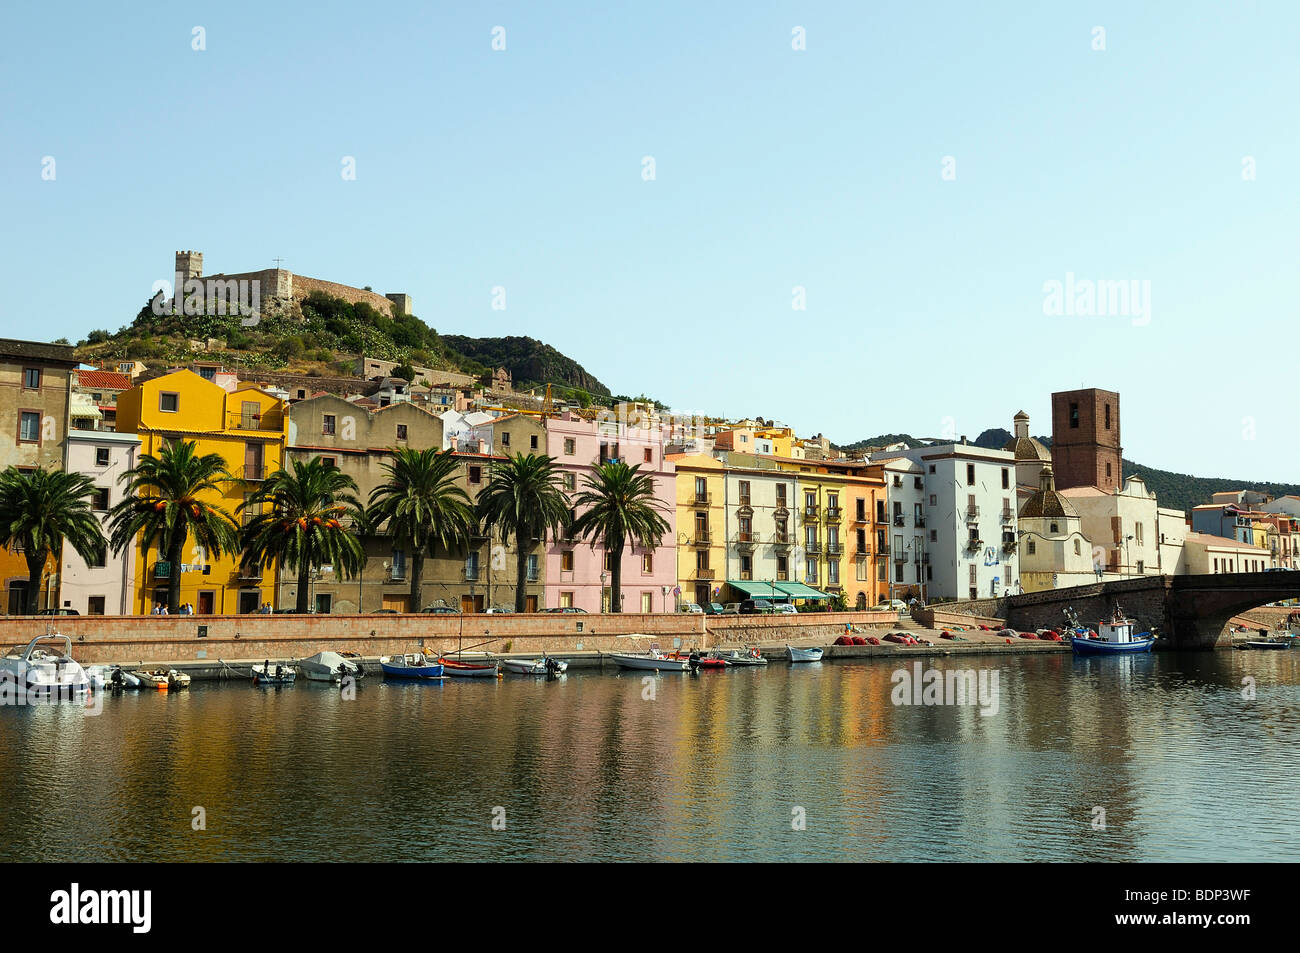 Affacciato sul fiume Temo e il centro storico della città con fortezza Malaspina, Bosa, Oristano, Sardegna, Italia, Europa Foto Stock